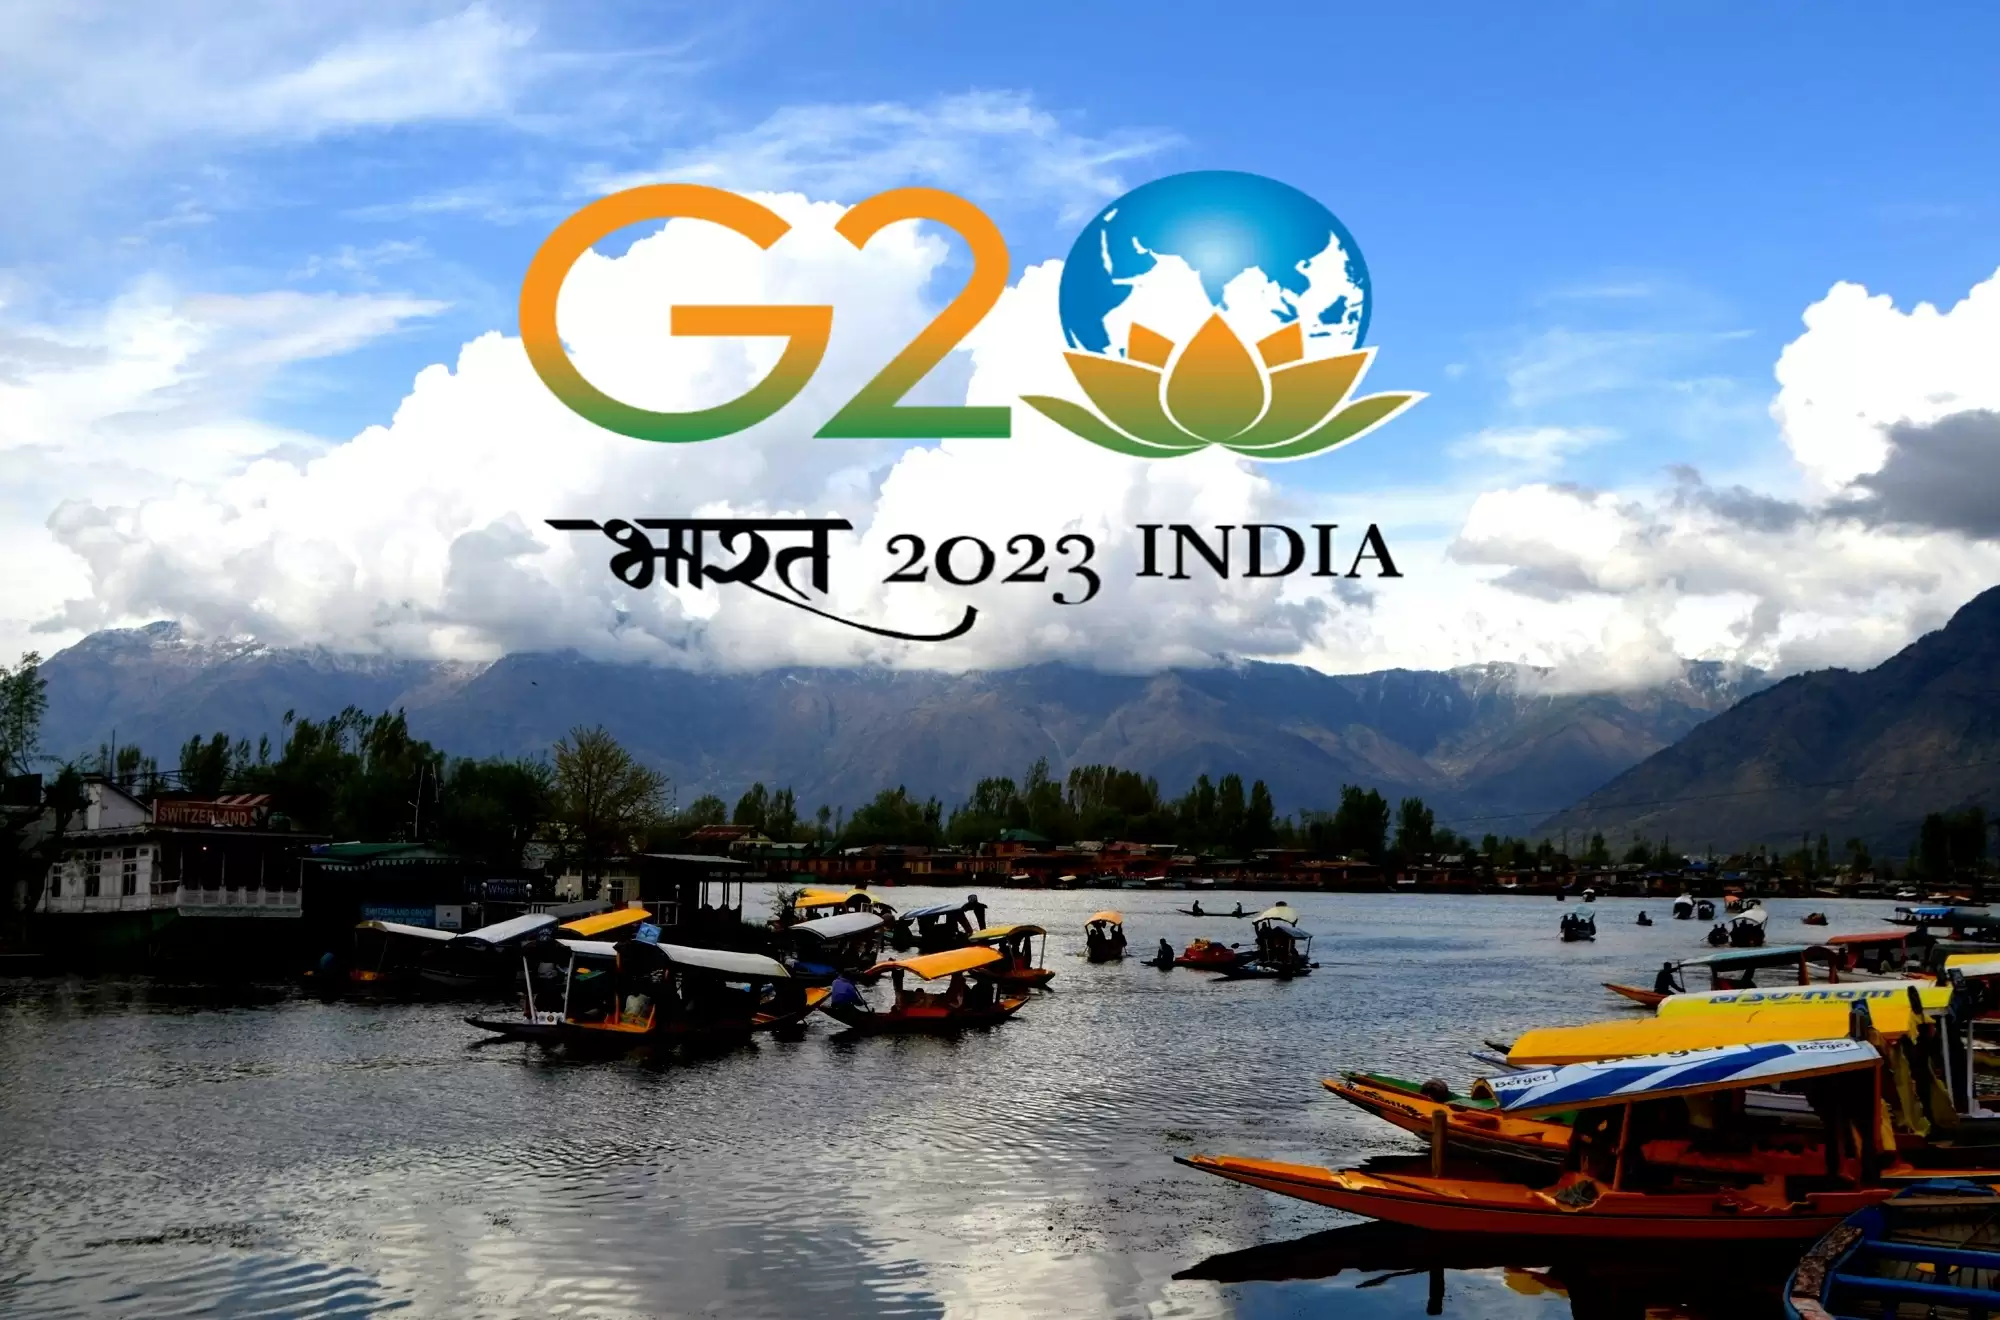 जी20 के प्रतिनिधि तीन दिवसीय यात्रा के बाद दिल्ली के लिए रवाना